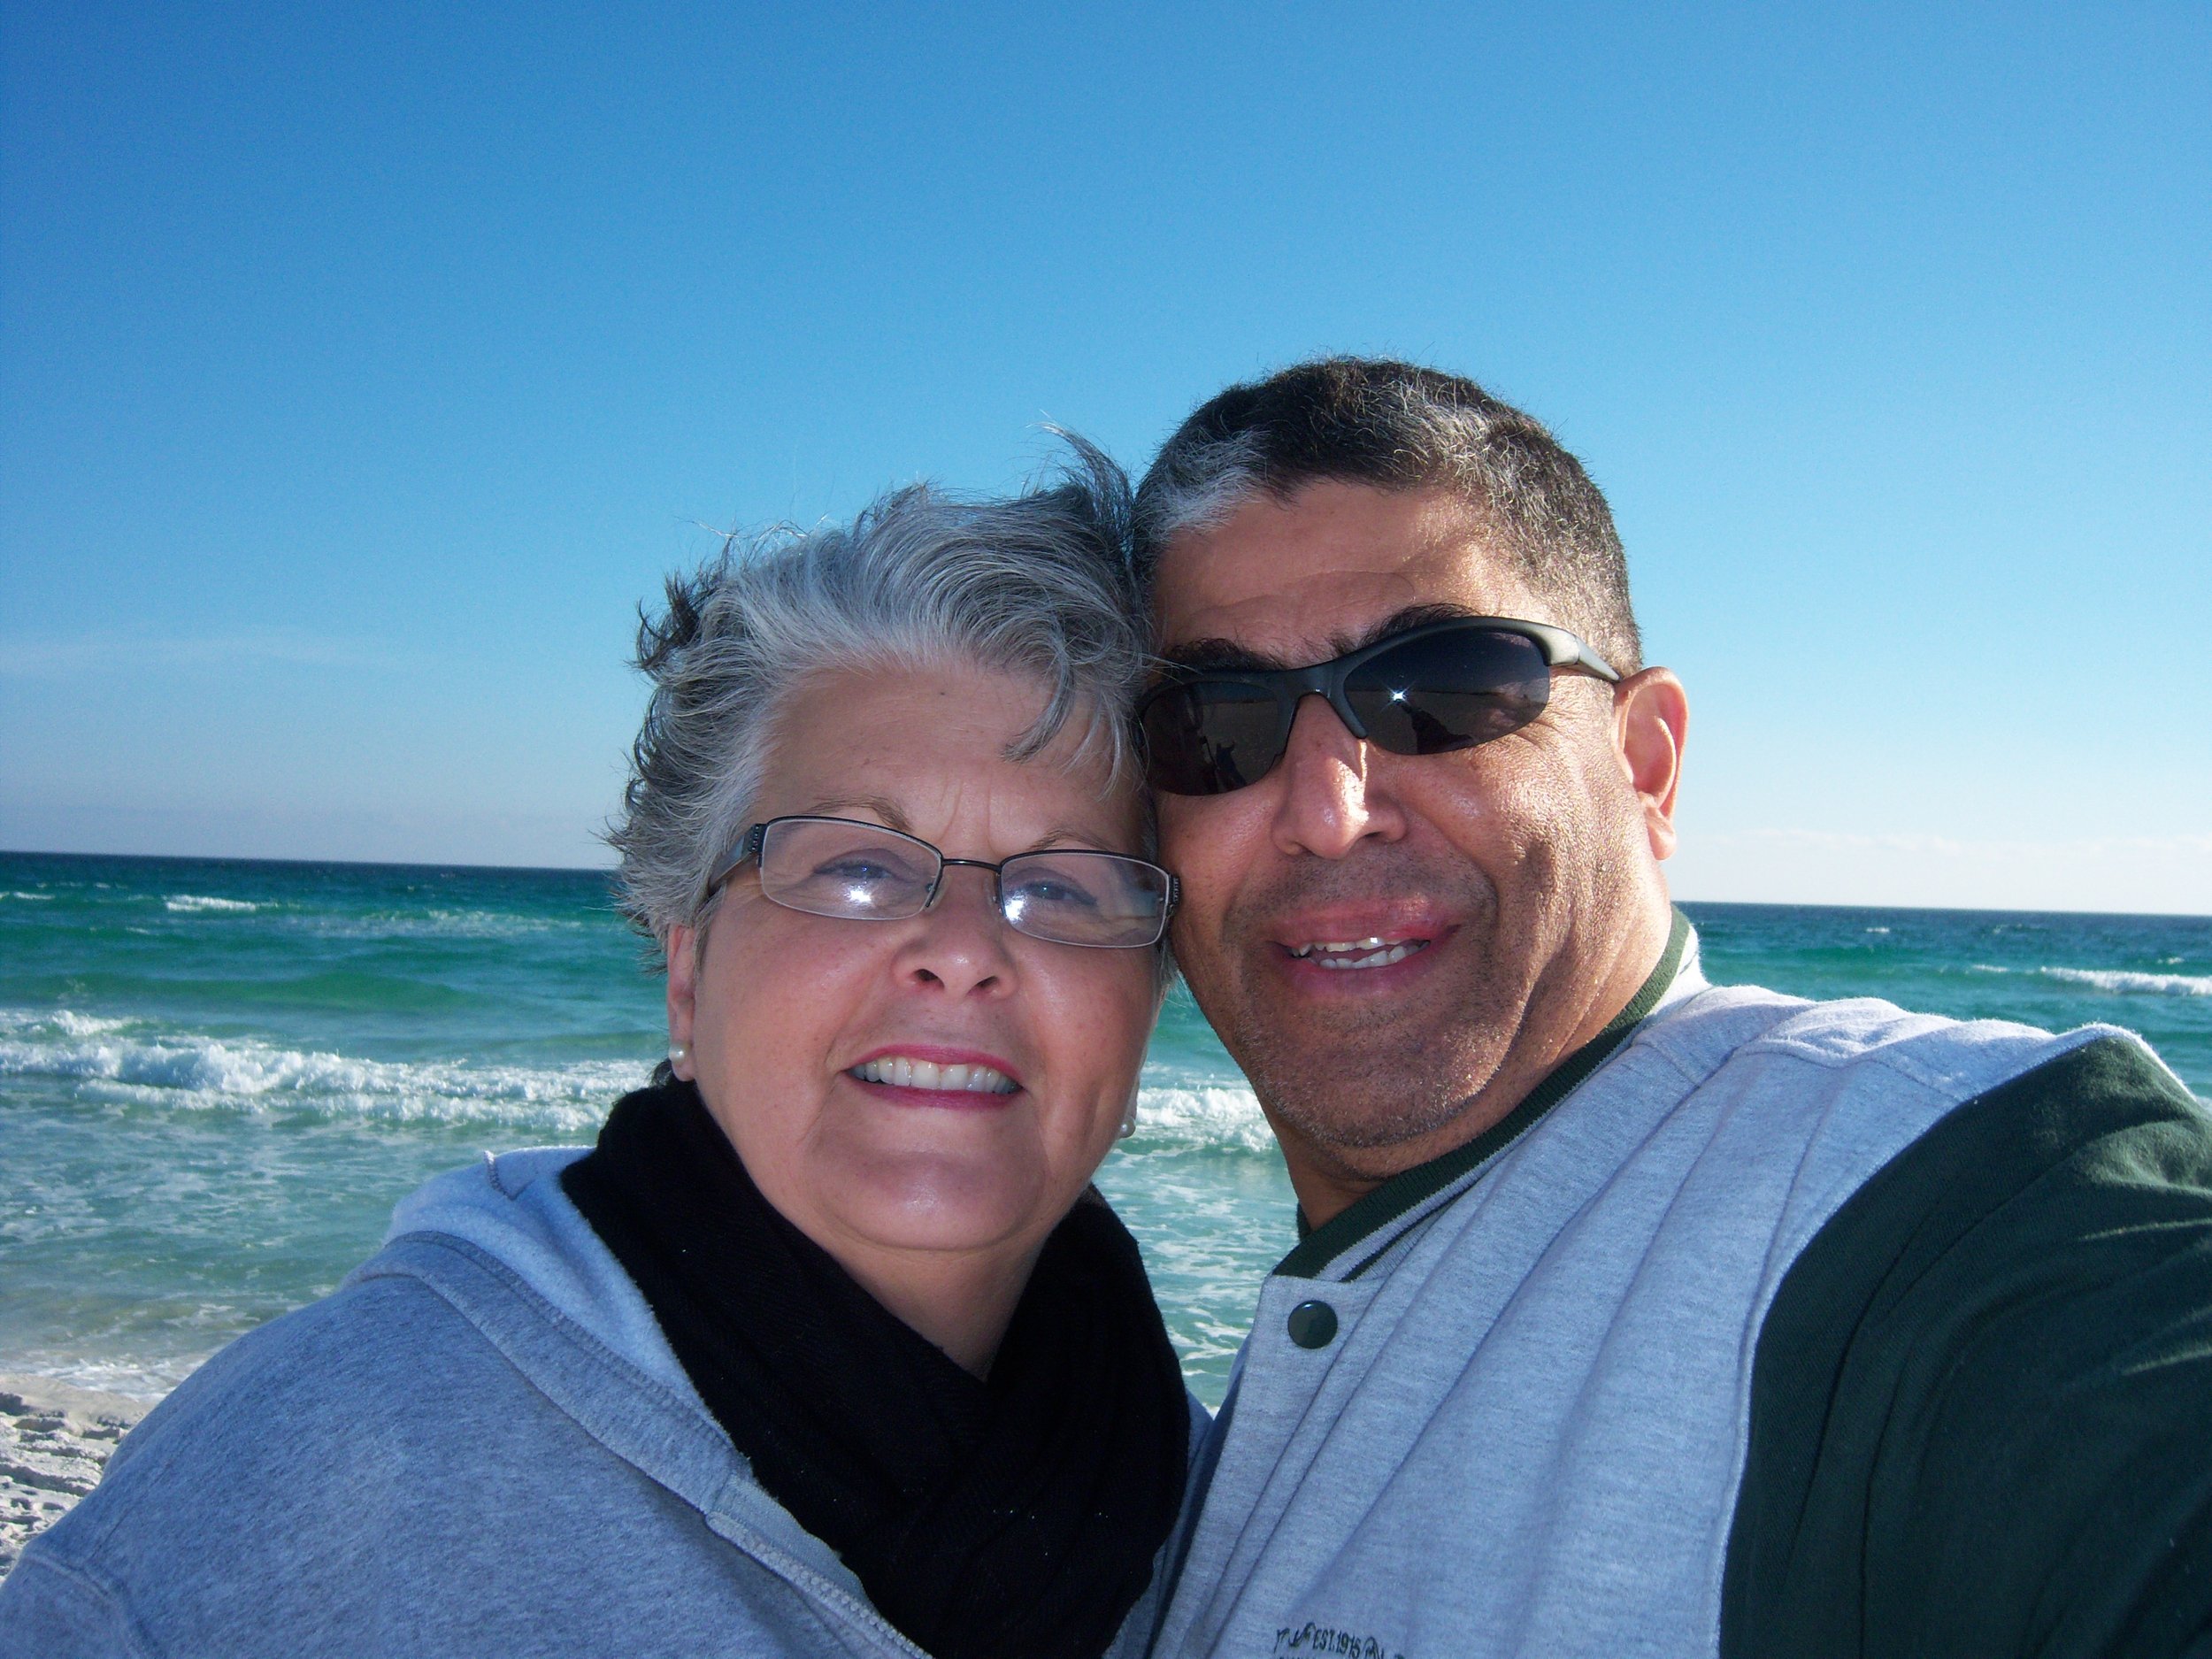 Selfie at the Beach 2014.jpg